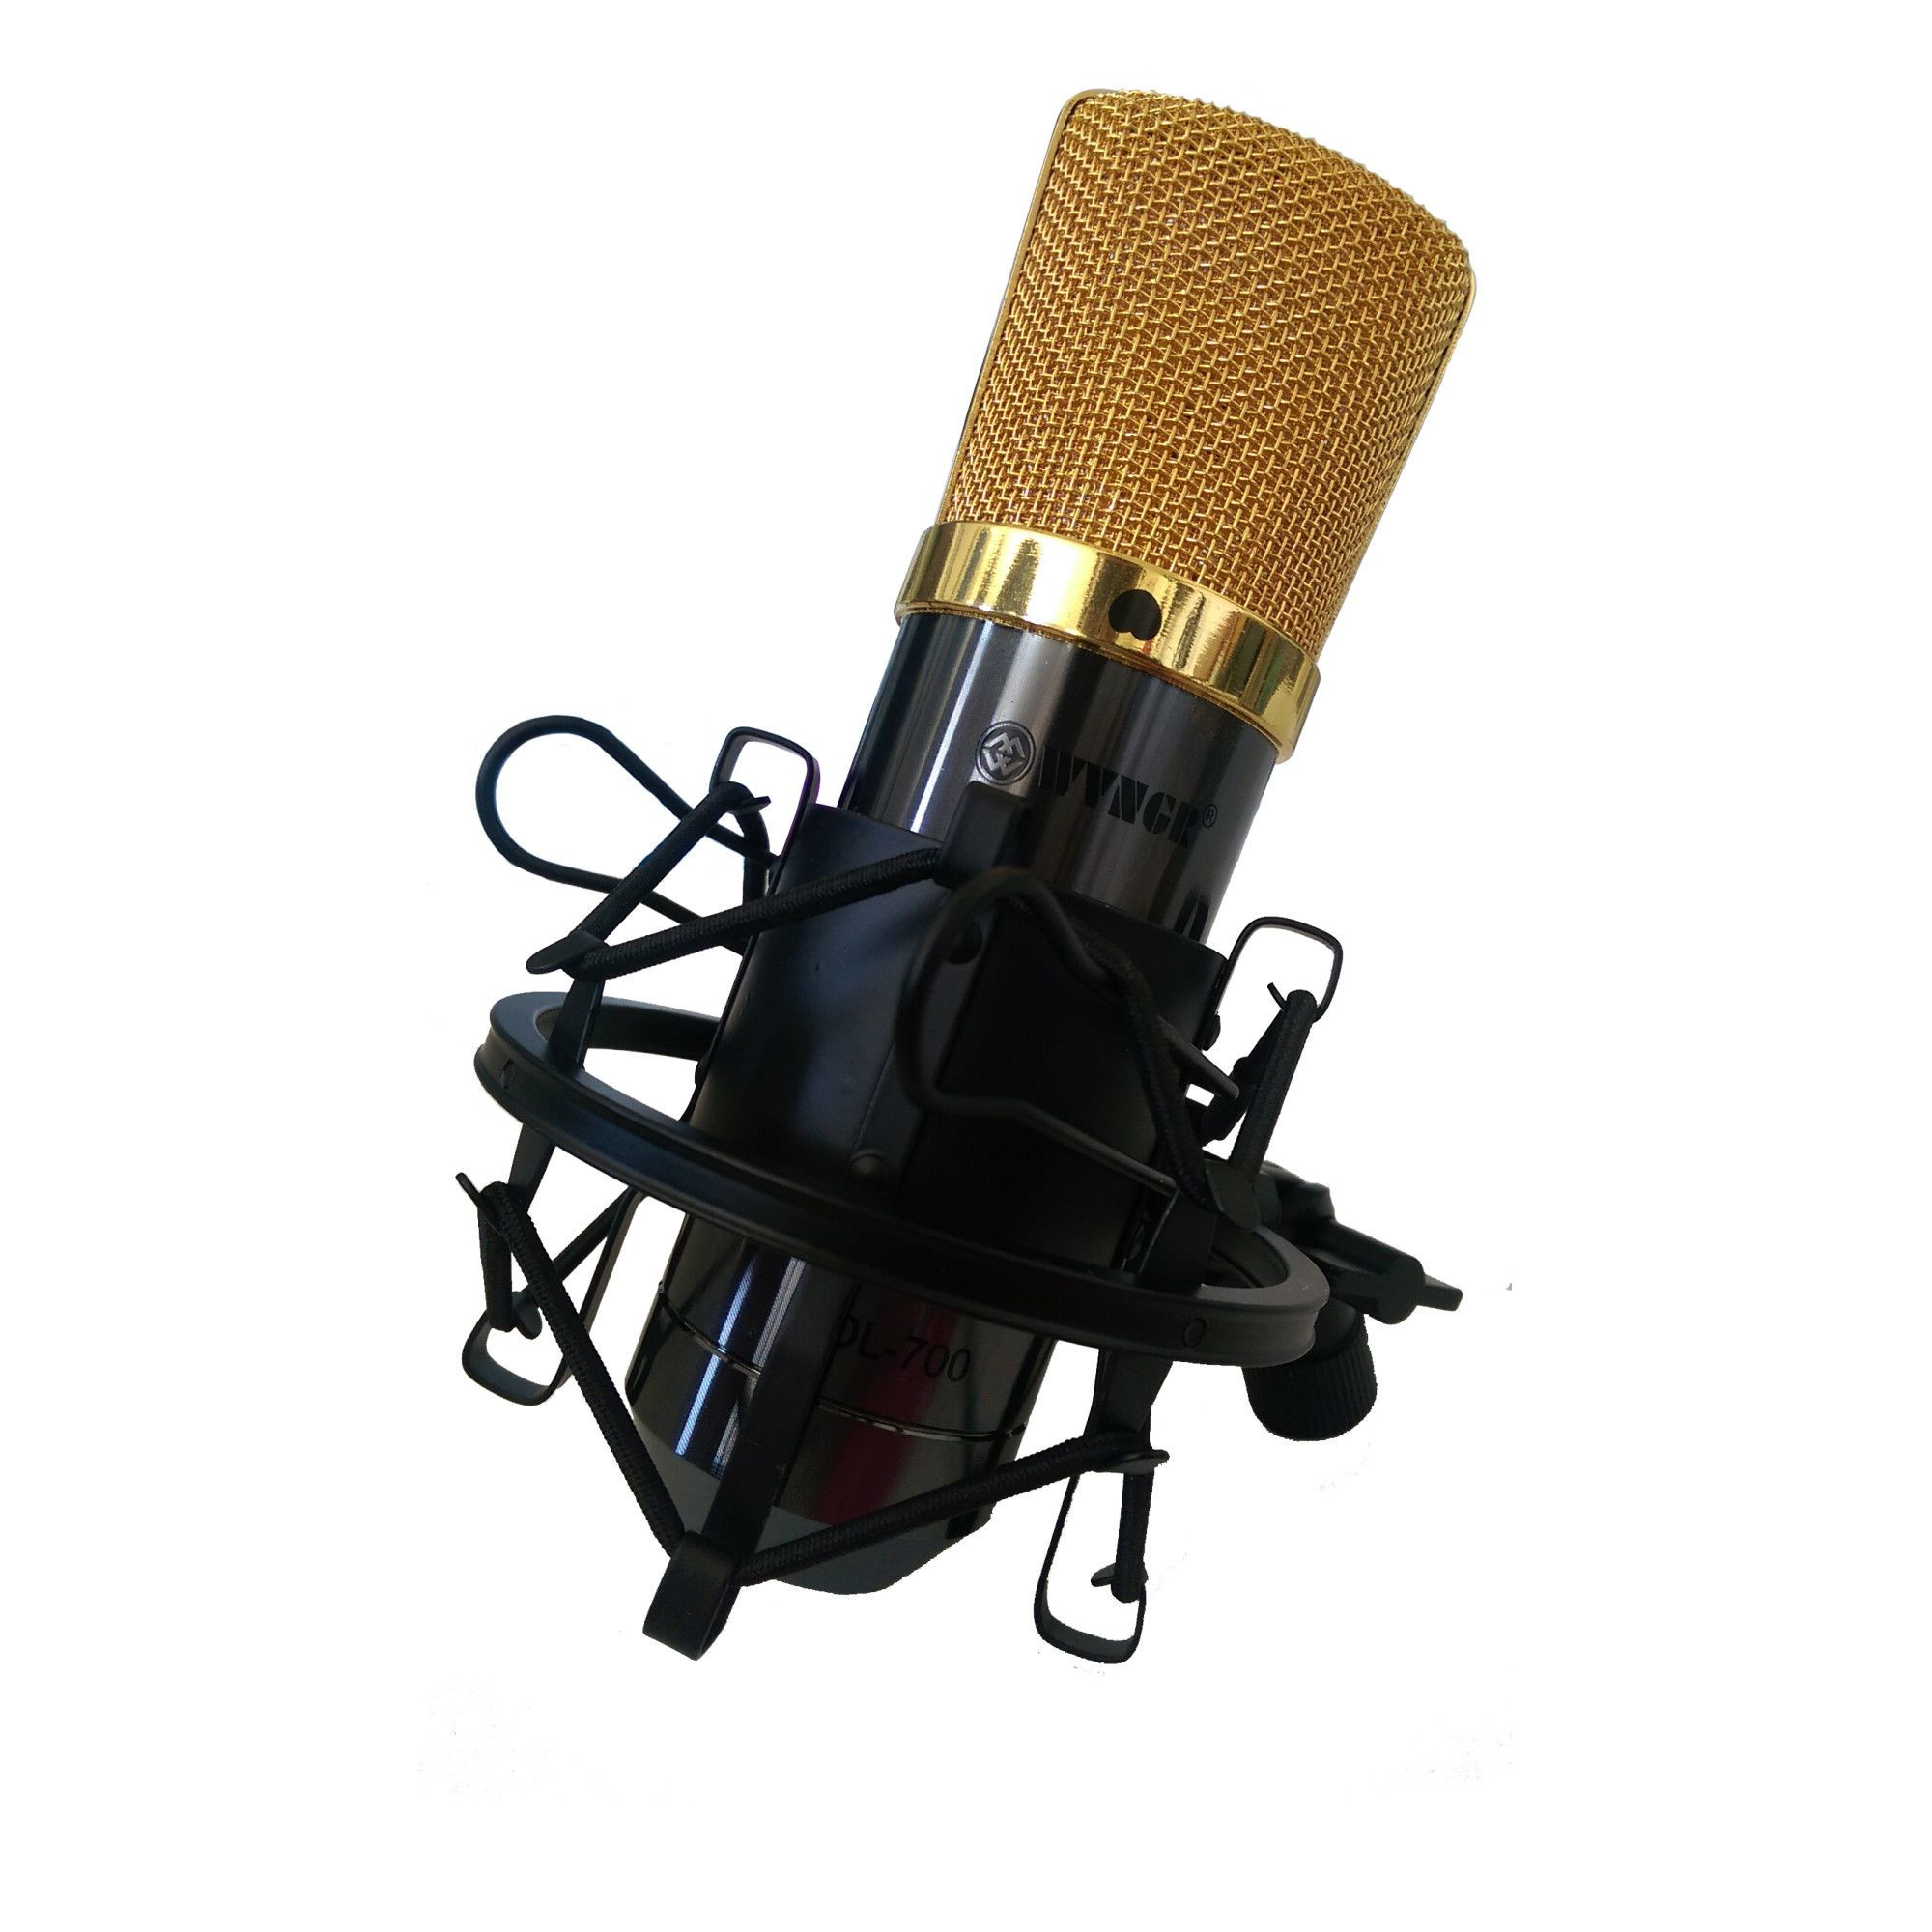 Wngr Microfon profesional cu fir dl-700 cu alimentator